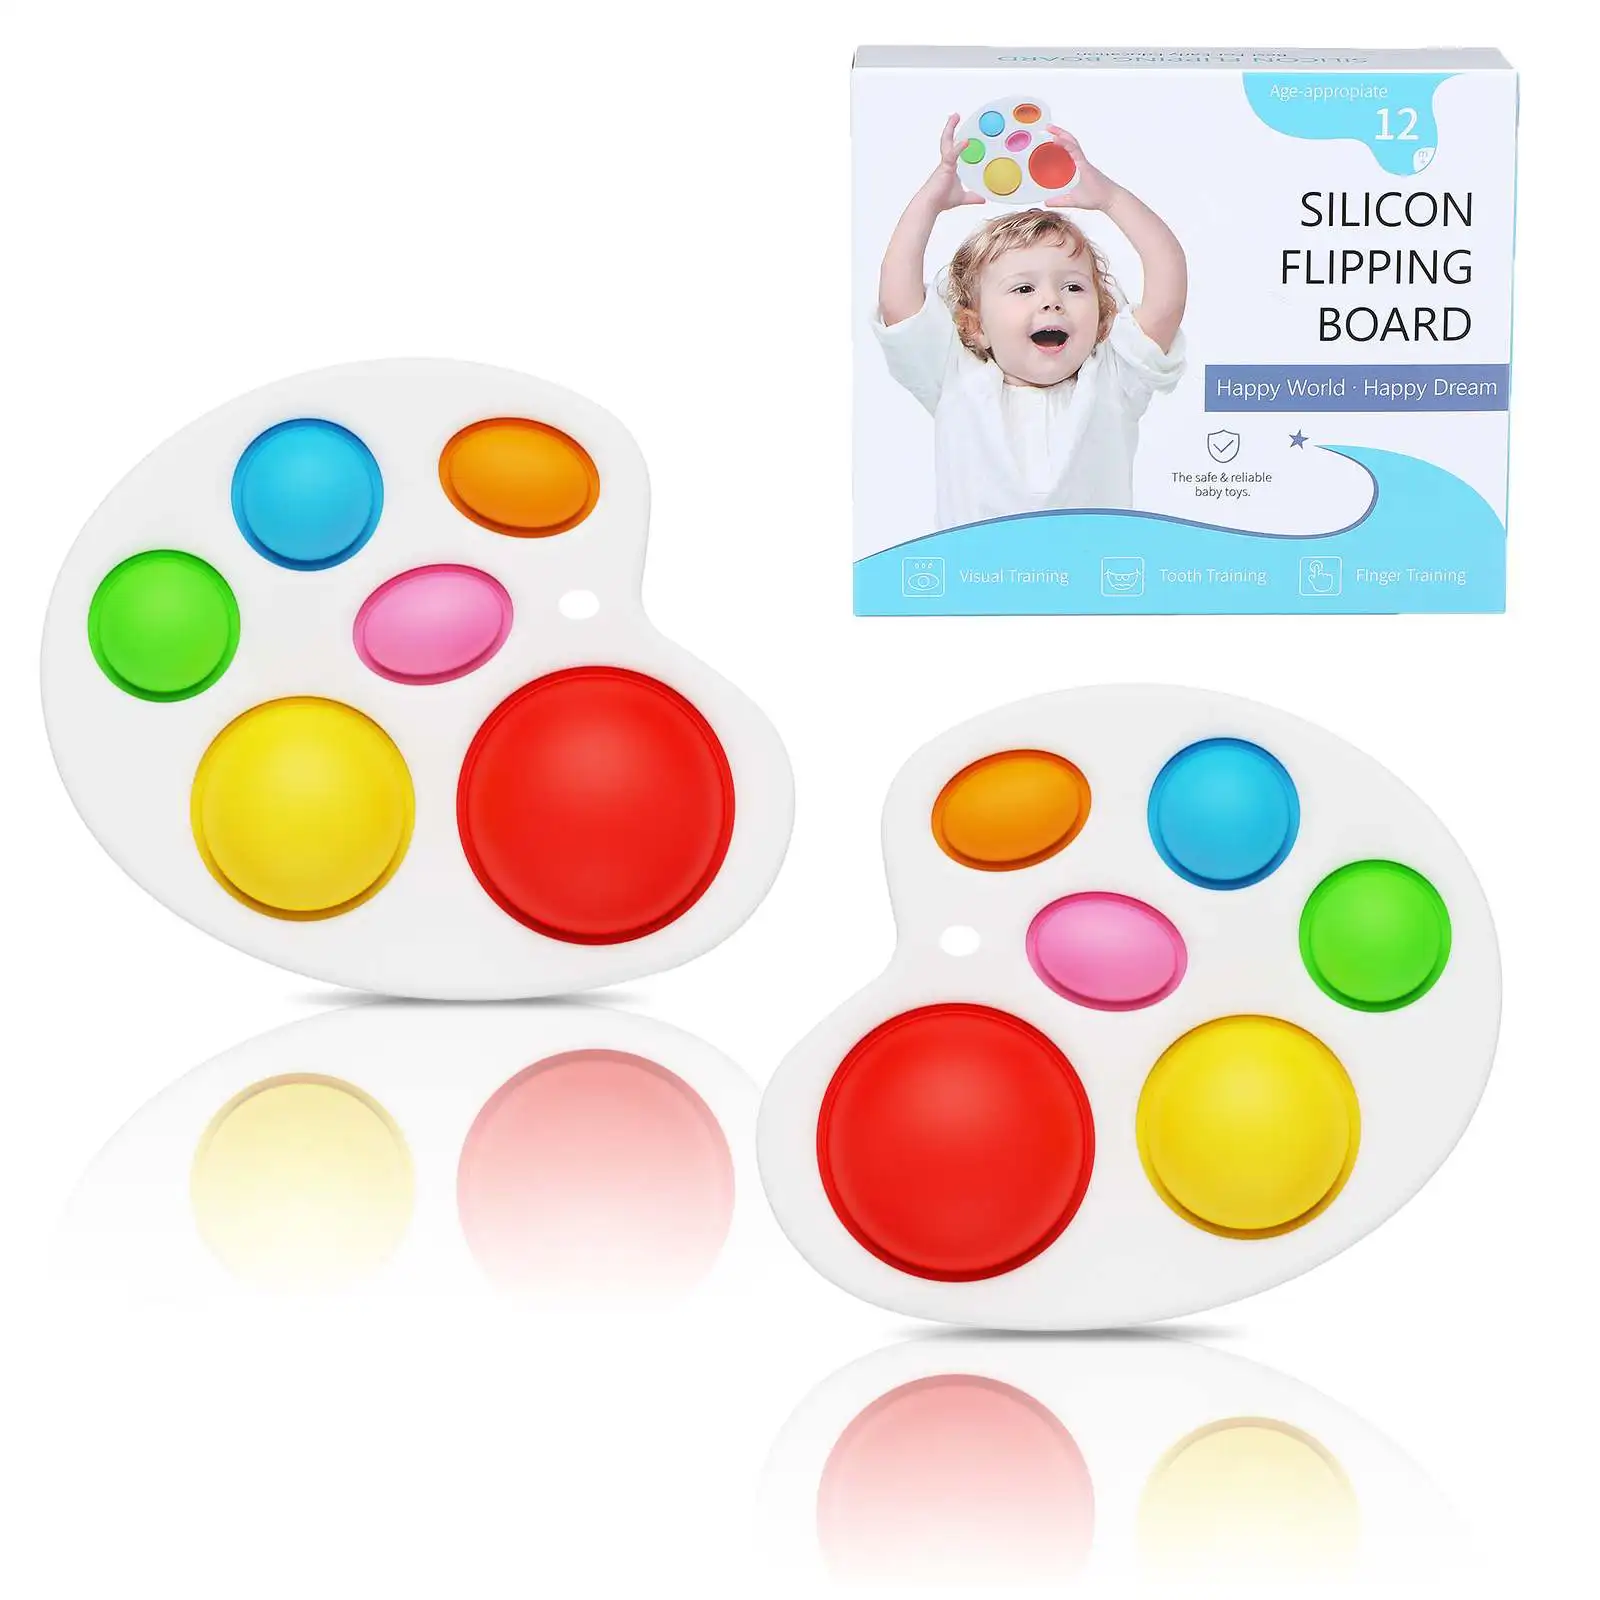 Popset Fidget Sensory Toy keychain Stress Relief Antistress Board Autism Anxiety Fidget Toy For Kids